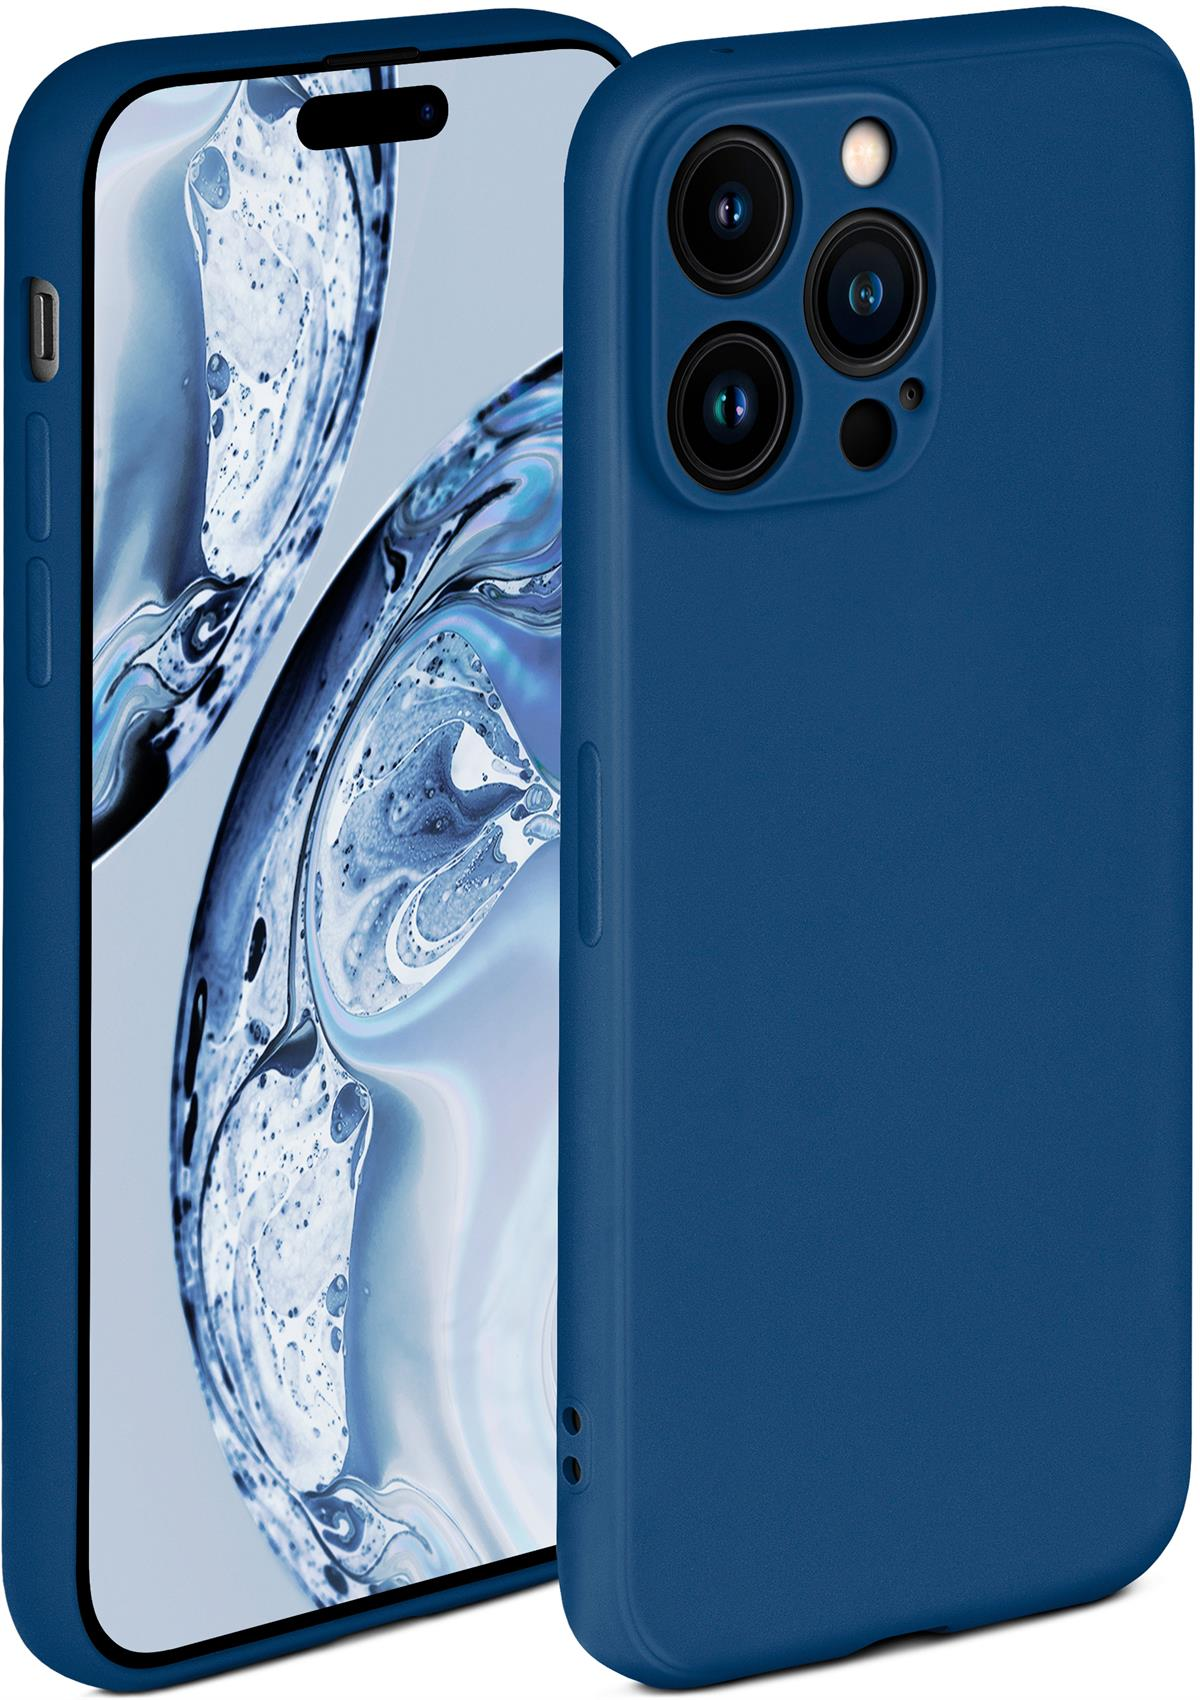 Horizontblau Soft Pro, 14 ONEFLOW Backcover, Case, Apple, iPhone